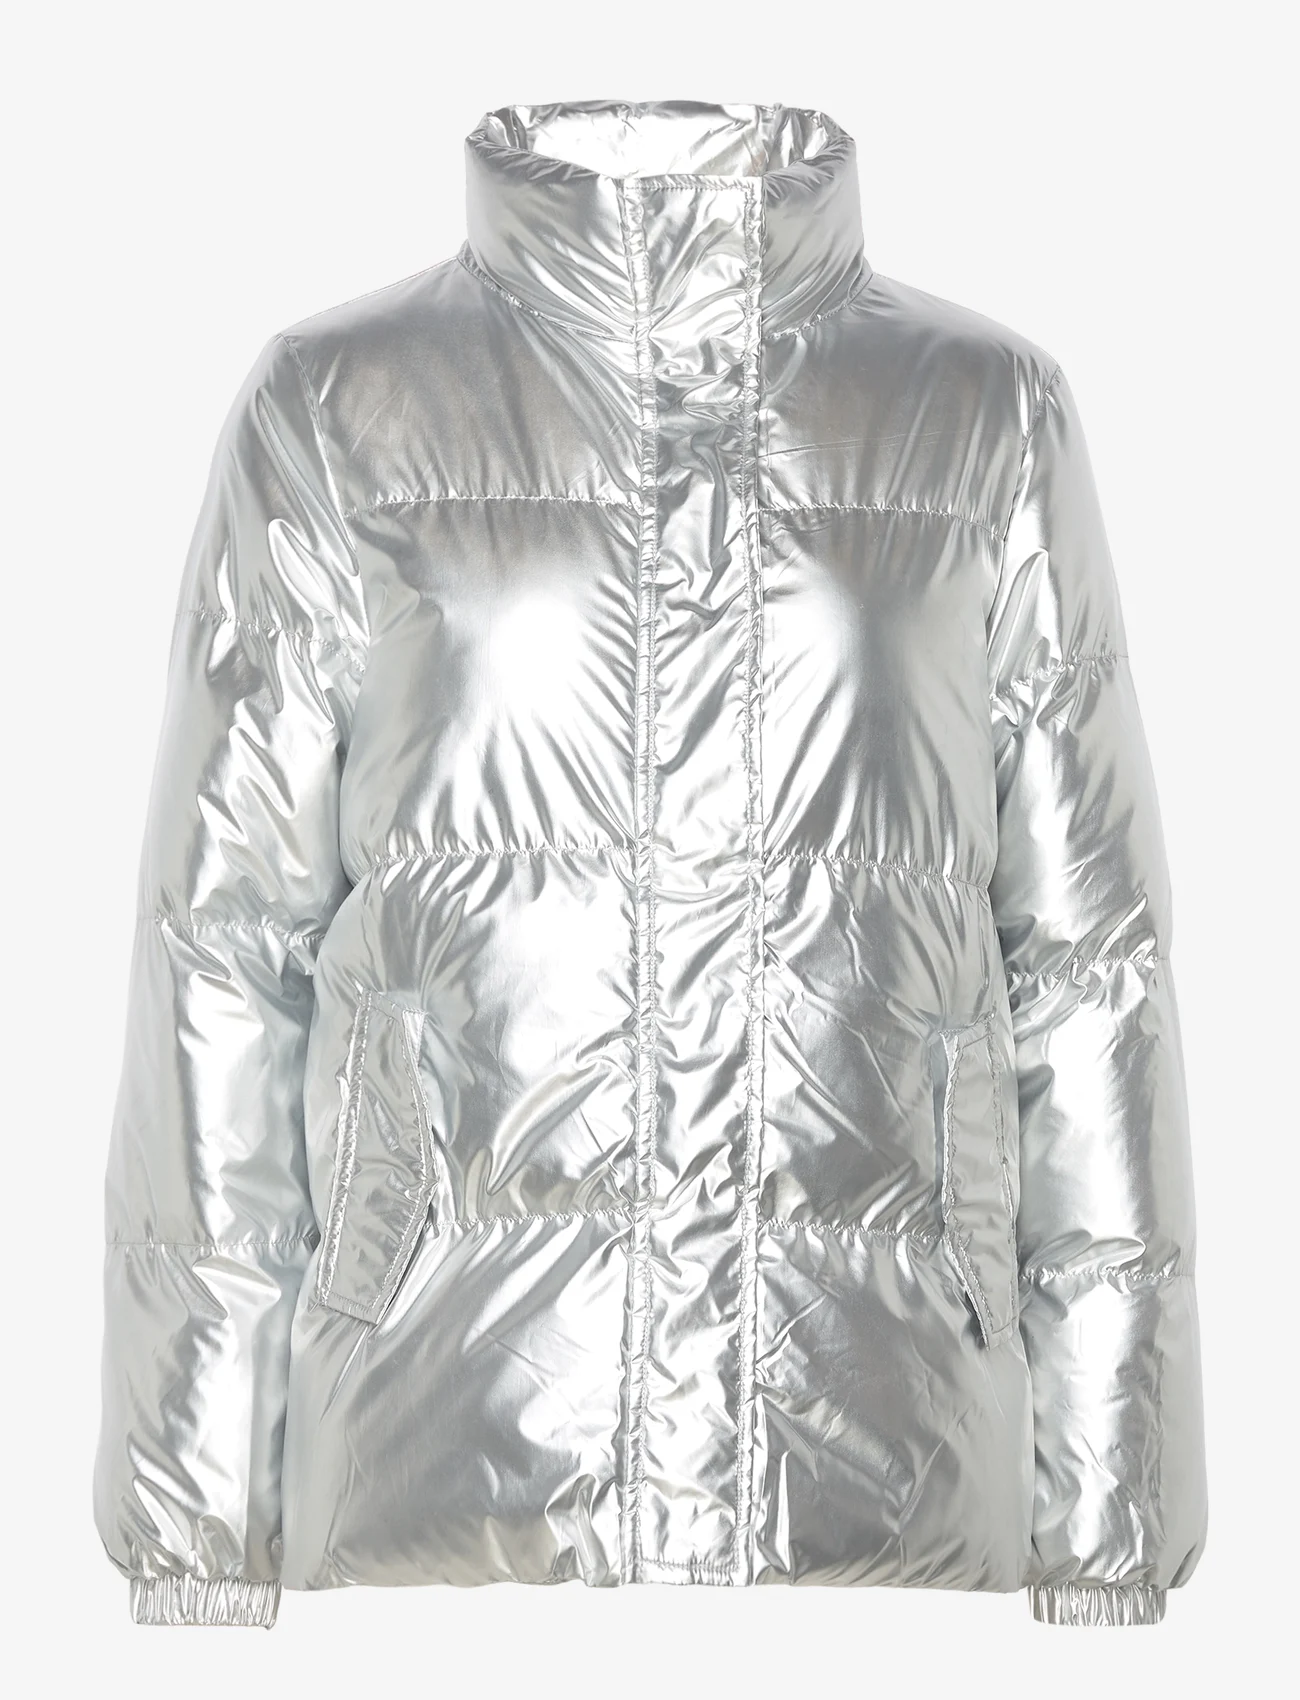 Noella - Nelli Puffer Jacket - winter jackets - silver metal - 0